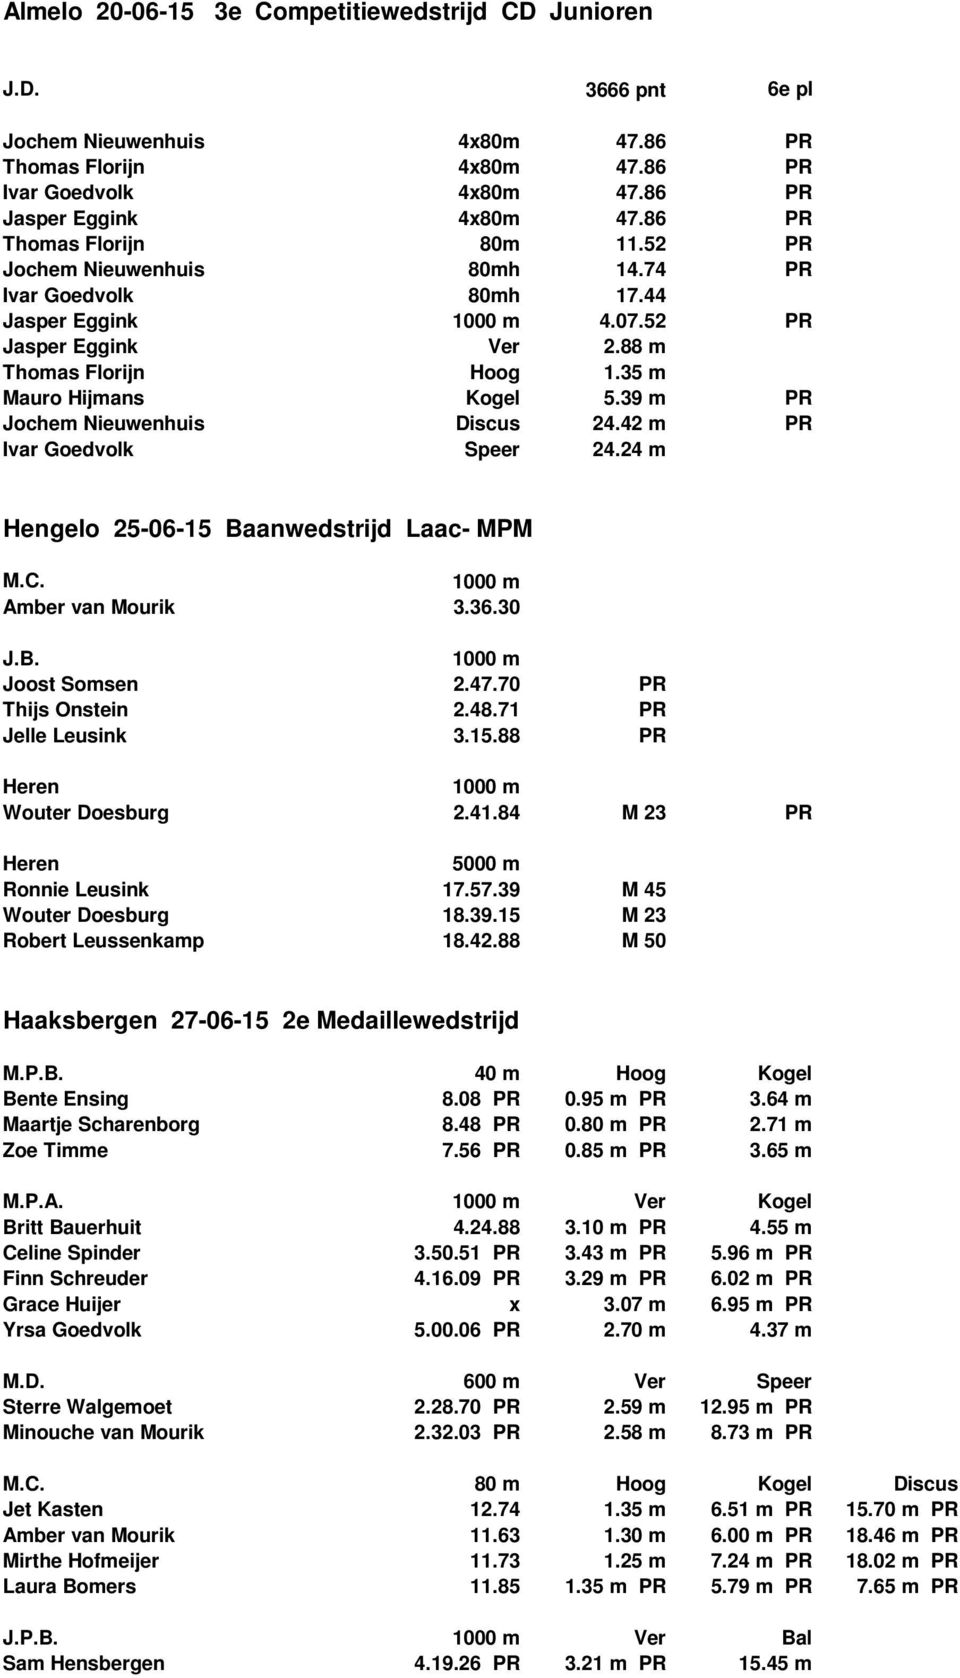 39 m PR Jochem Nieuwenhuis Discus 24.42 m PR Ivar Goedvolk Speer 24.24 m Hengelo 25-06-15 Baanwedstrijd Laac- MPM Amber van Mourik 3.36.30 Joost Somsen 2.47.70 PR Thijs Onstein 2.48.